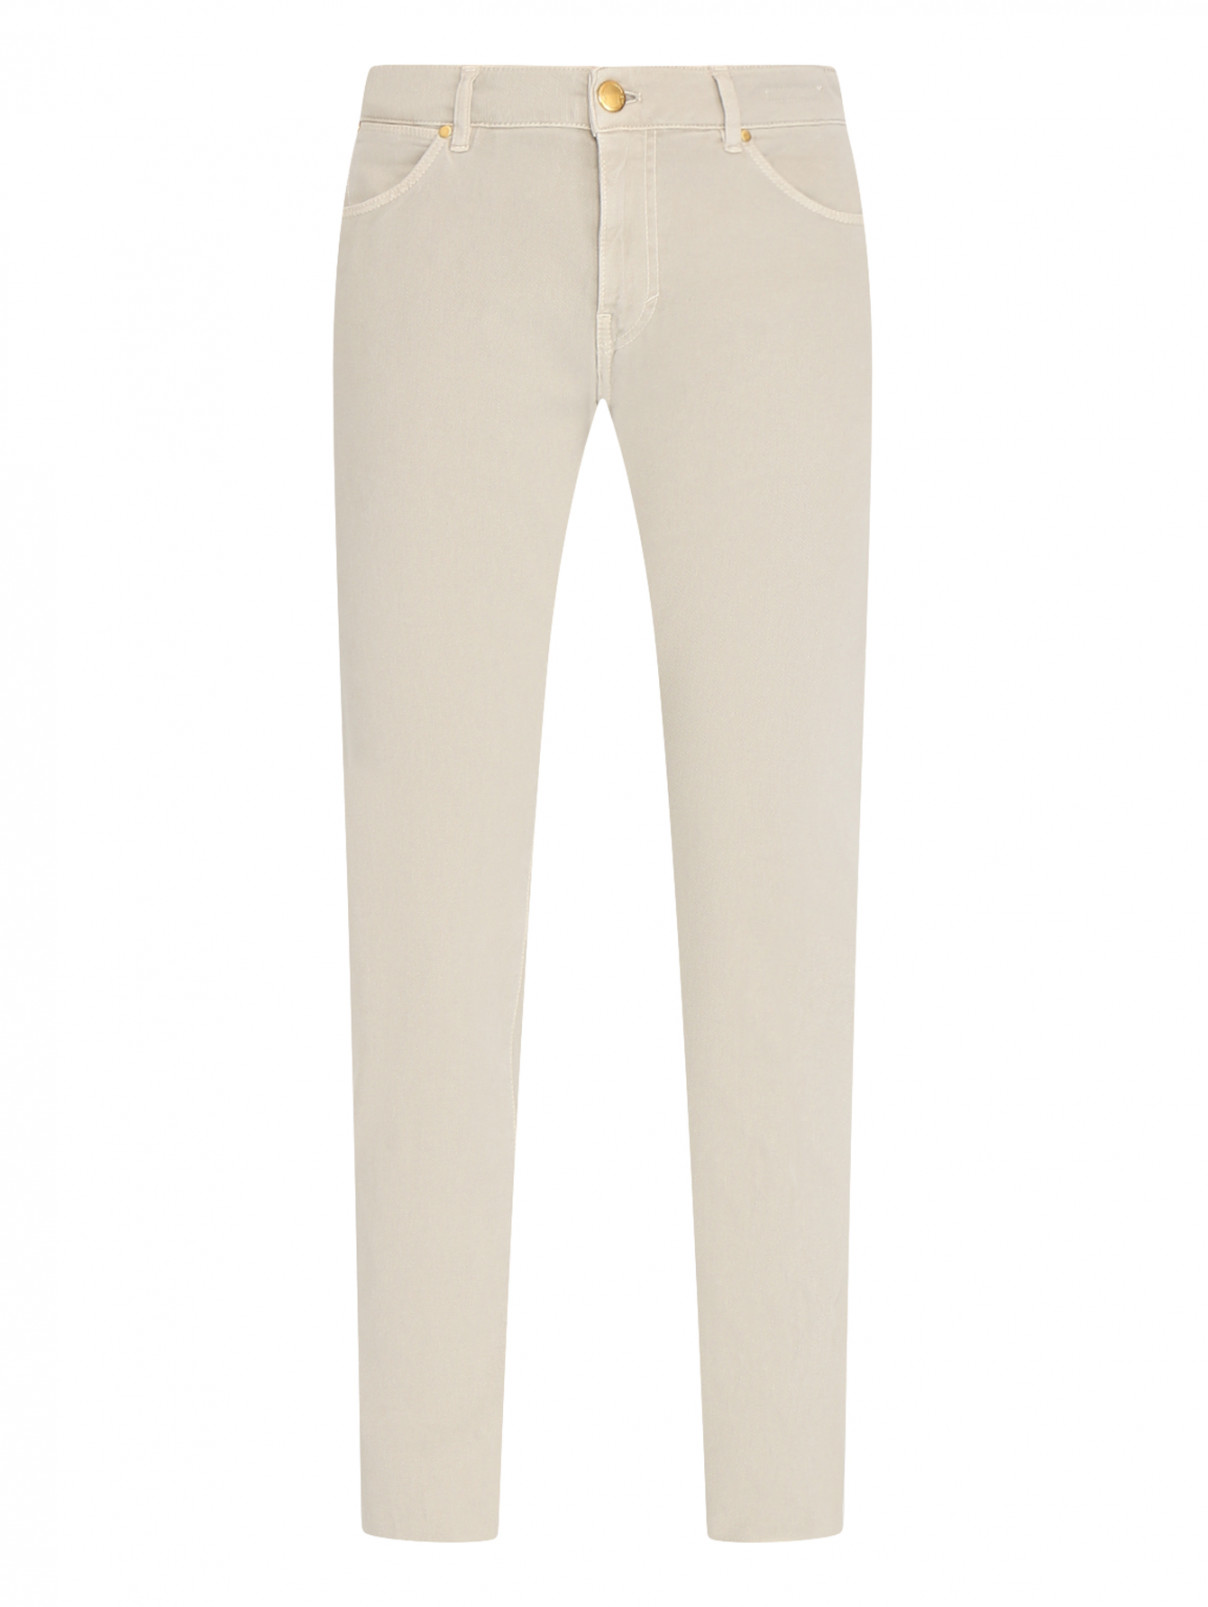 Однотонные брюки из хлопкового вельвета PT Torino  –  Общий вид  – Цвет:  Бежевый